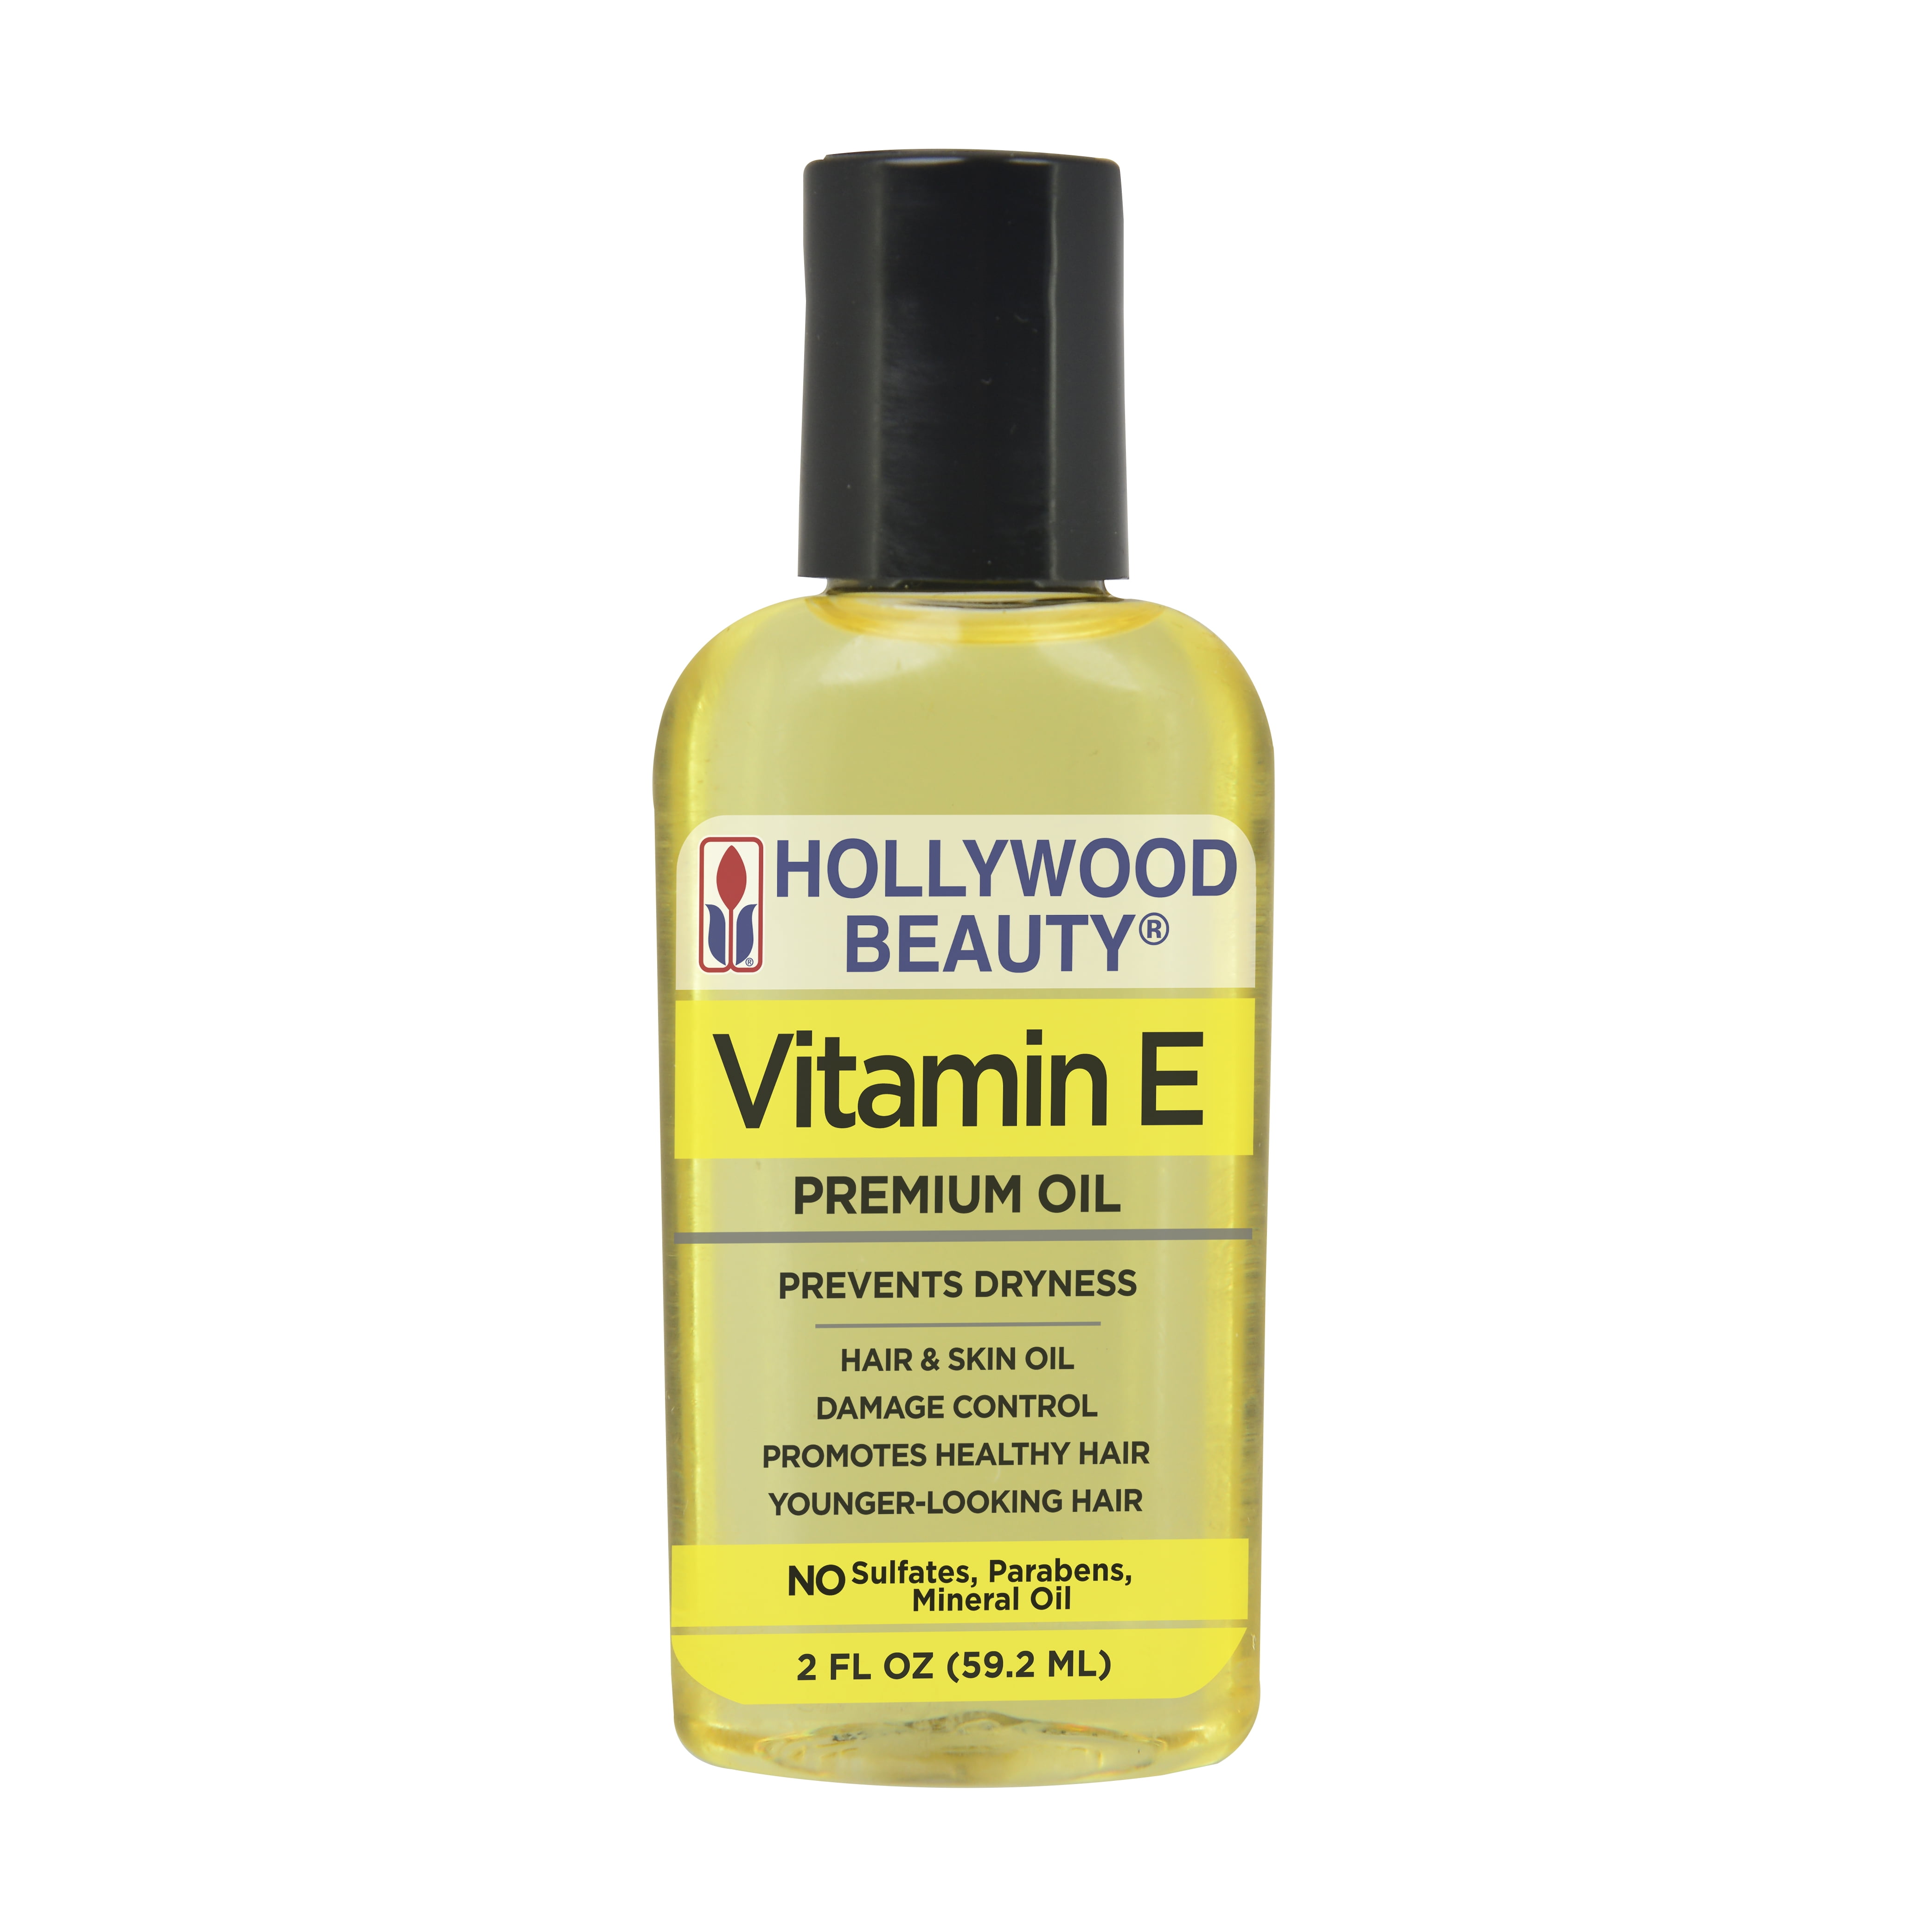 Hollywood Beauty Vitamin E Hair Oil, 2 fl oz 